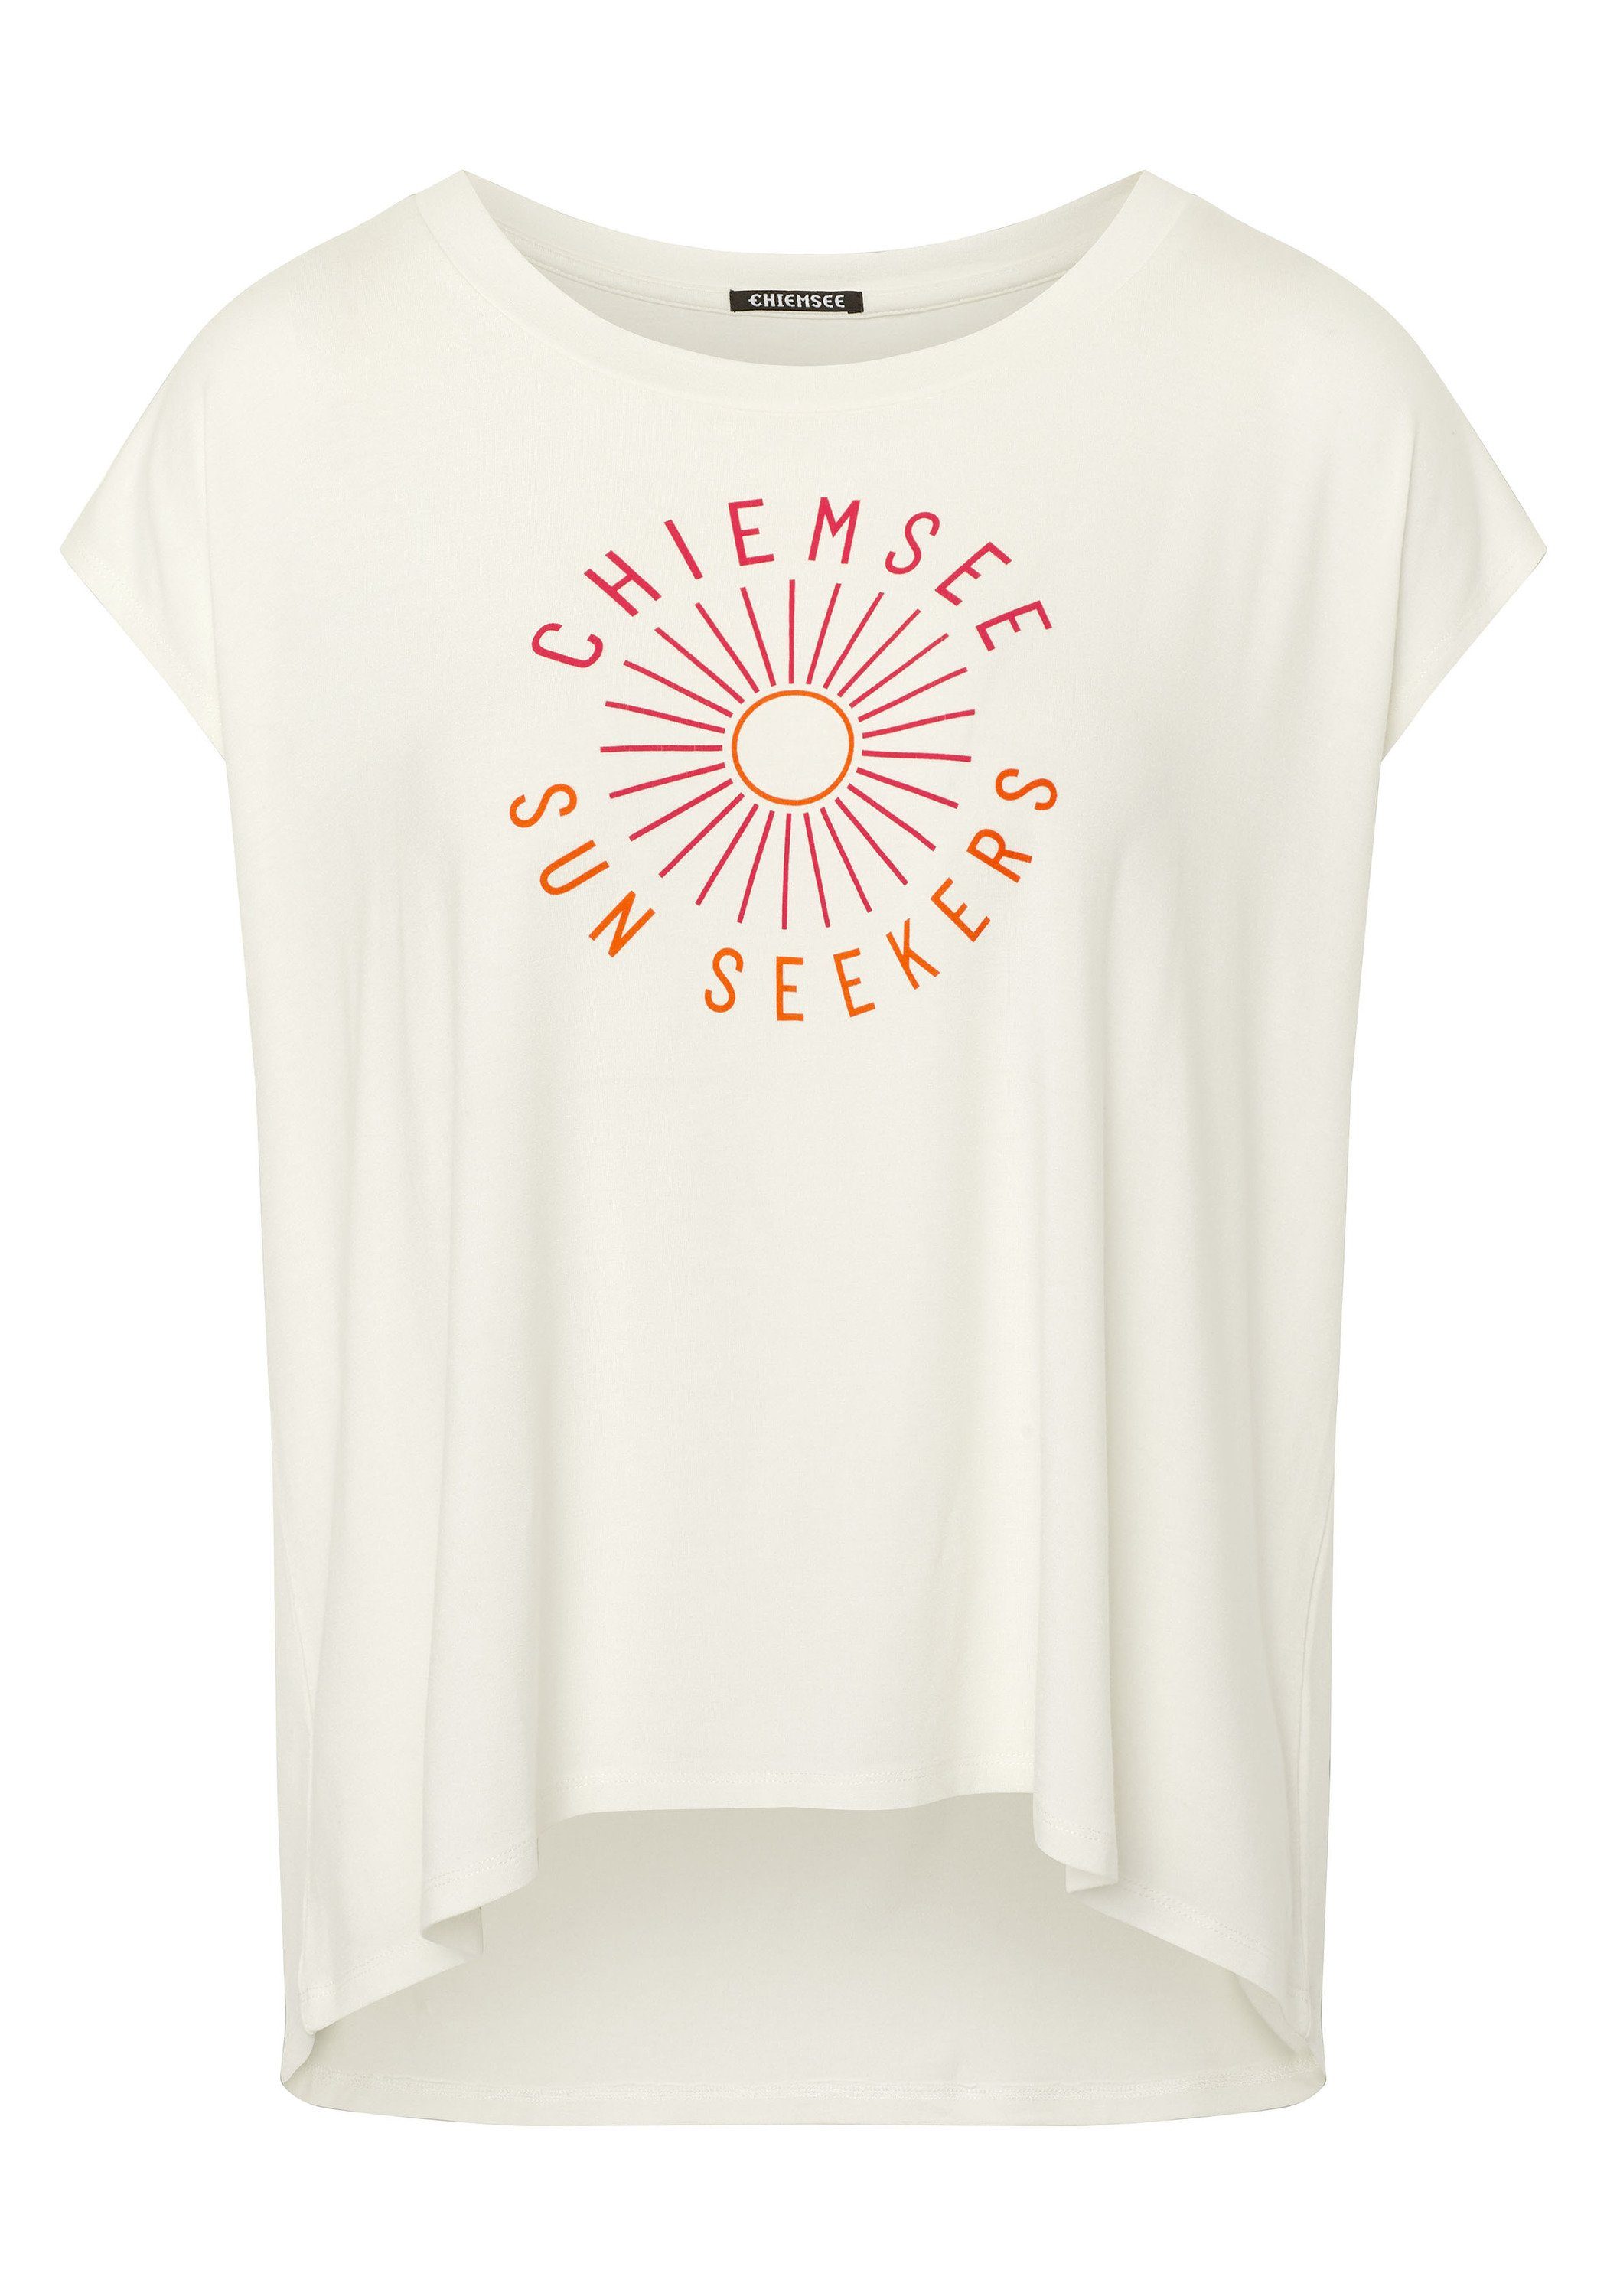 Chiemsee Print-Shirt T-Shirt und Motiv Star Schriftzug White 1 mit 11-4202